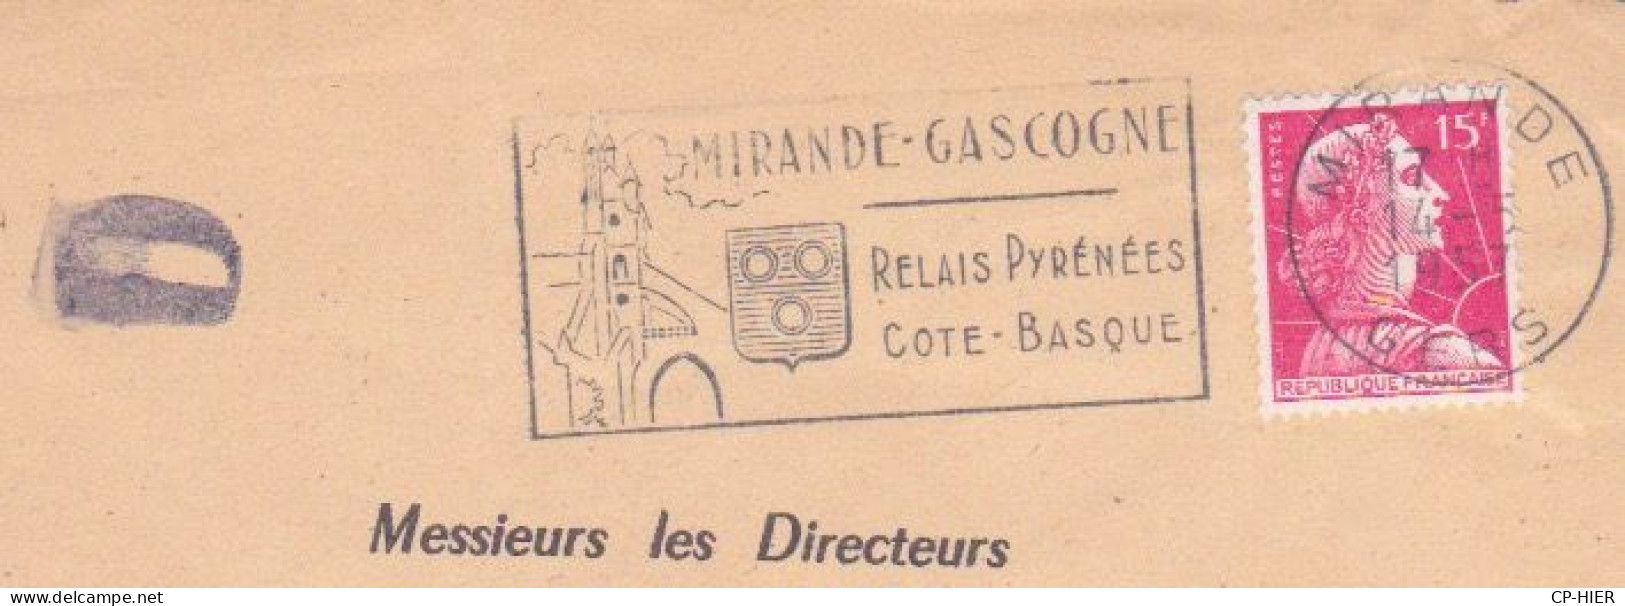 FRANCE - FLAMME  MIRANDE GASCOGNE - RELAIS PYRENEES COTE BASQUE - LETTRE D - ADRESSE CONTENTIEUX EUROPEEN PARIS - Oblitérations Mécaniques (flammes)